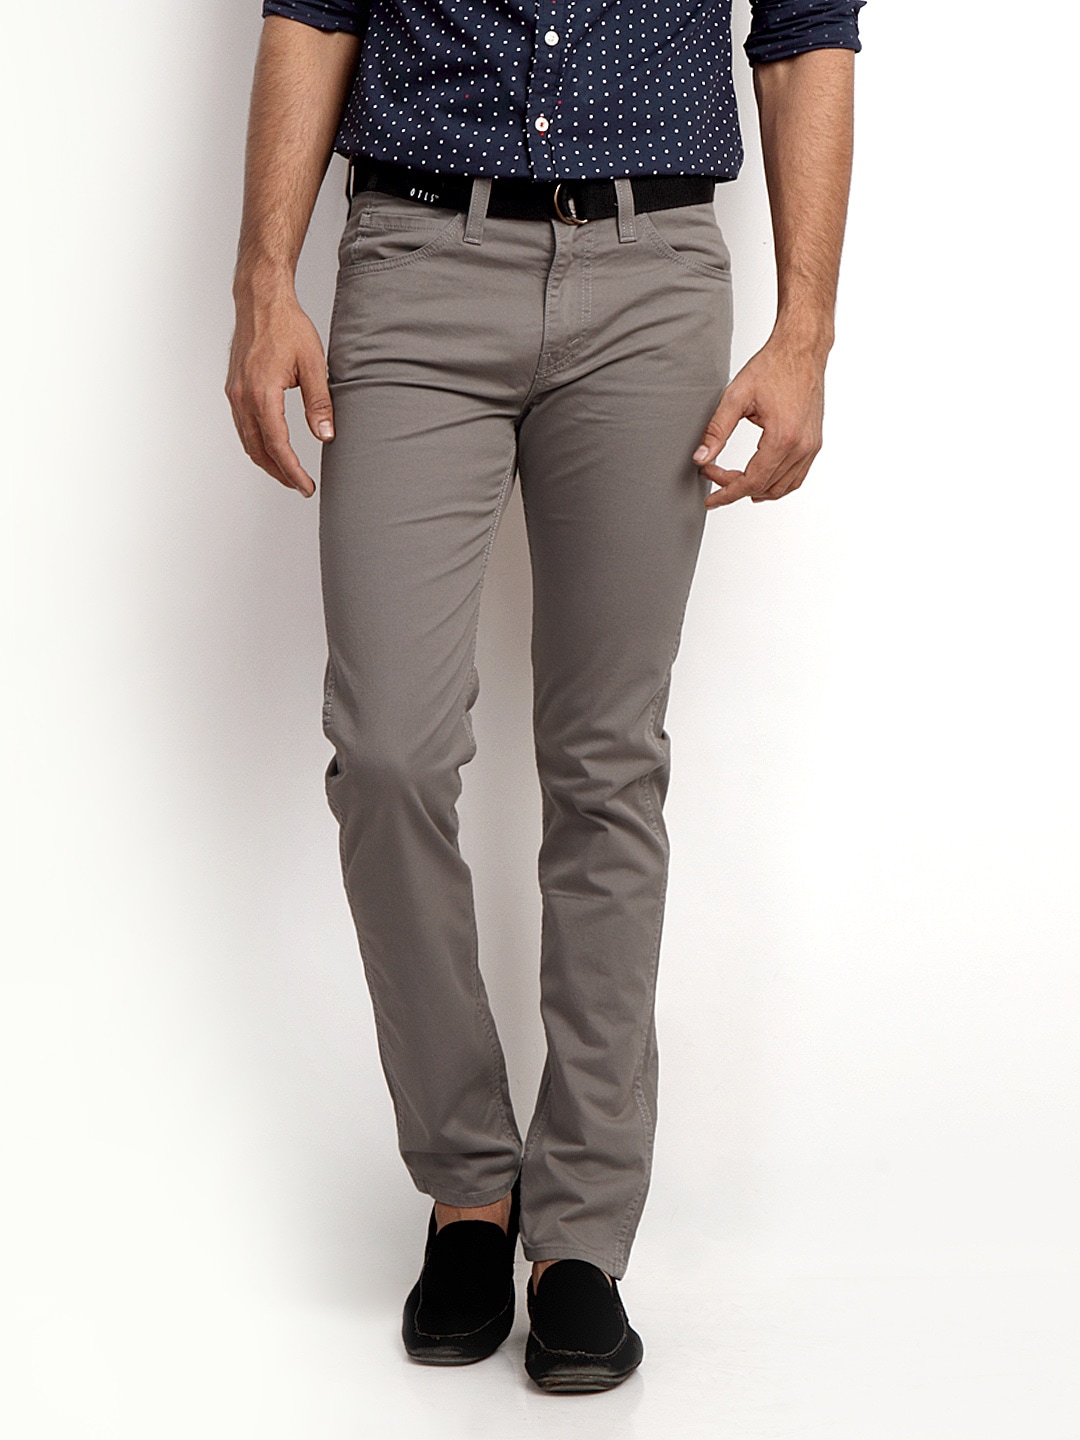 Buy Levis Men Grey 510 Line 8 Skinny Fit Jeans - 363 - Apparel for Men ...